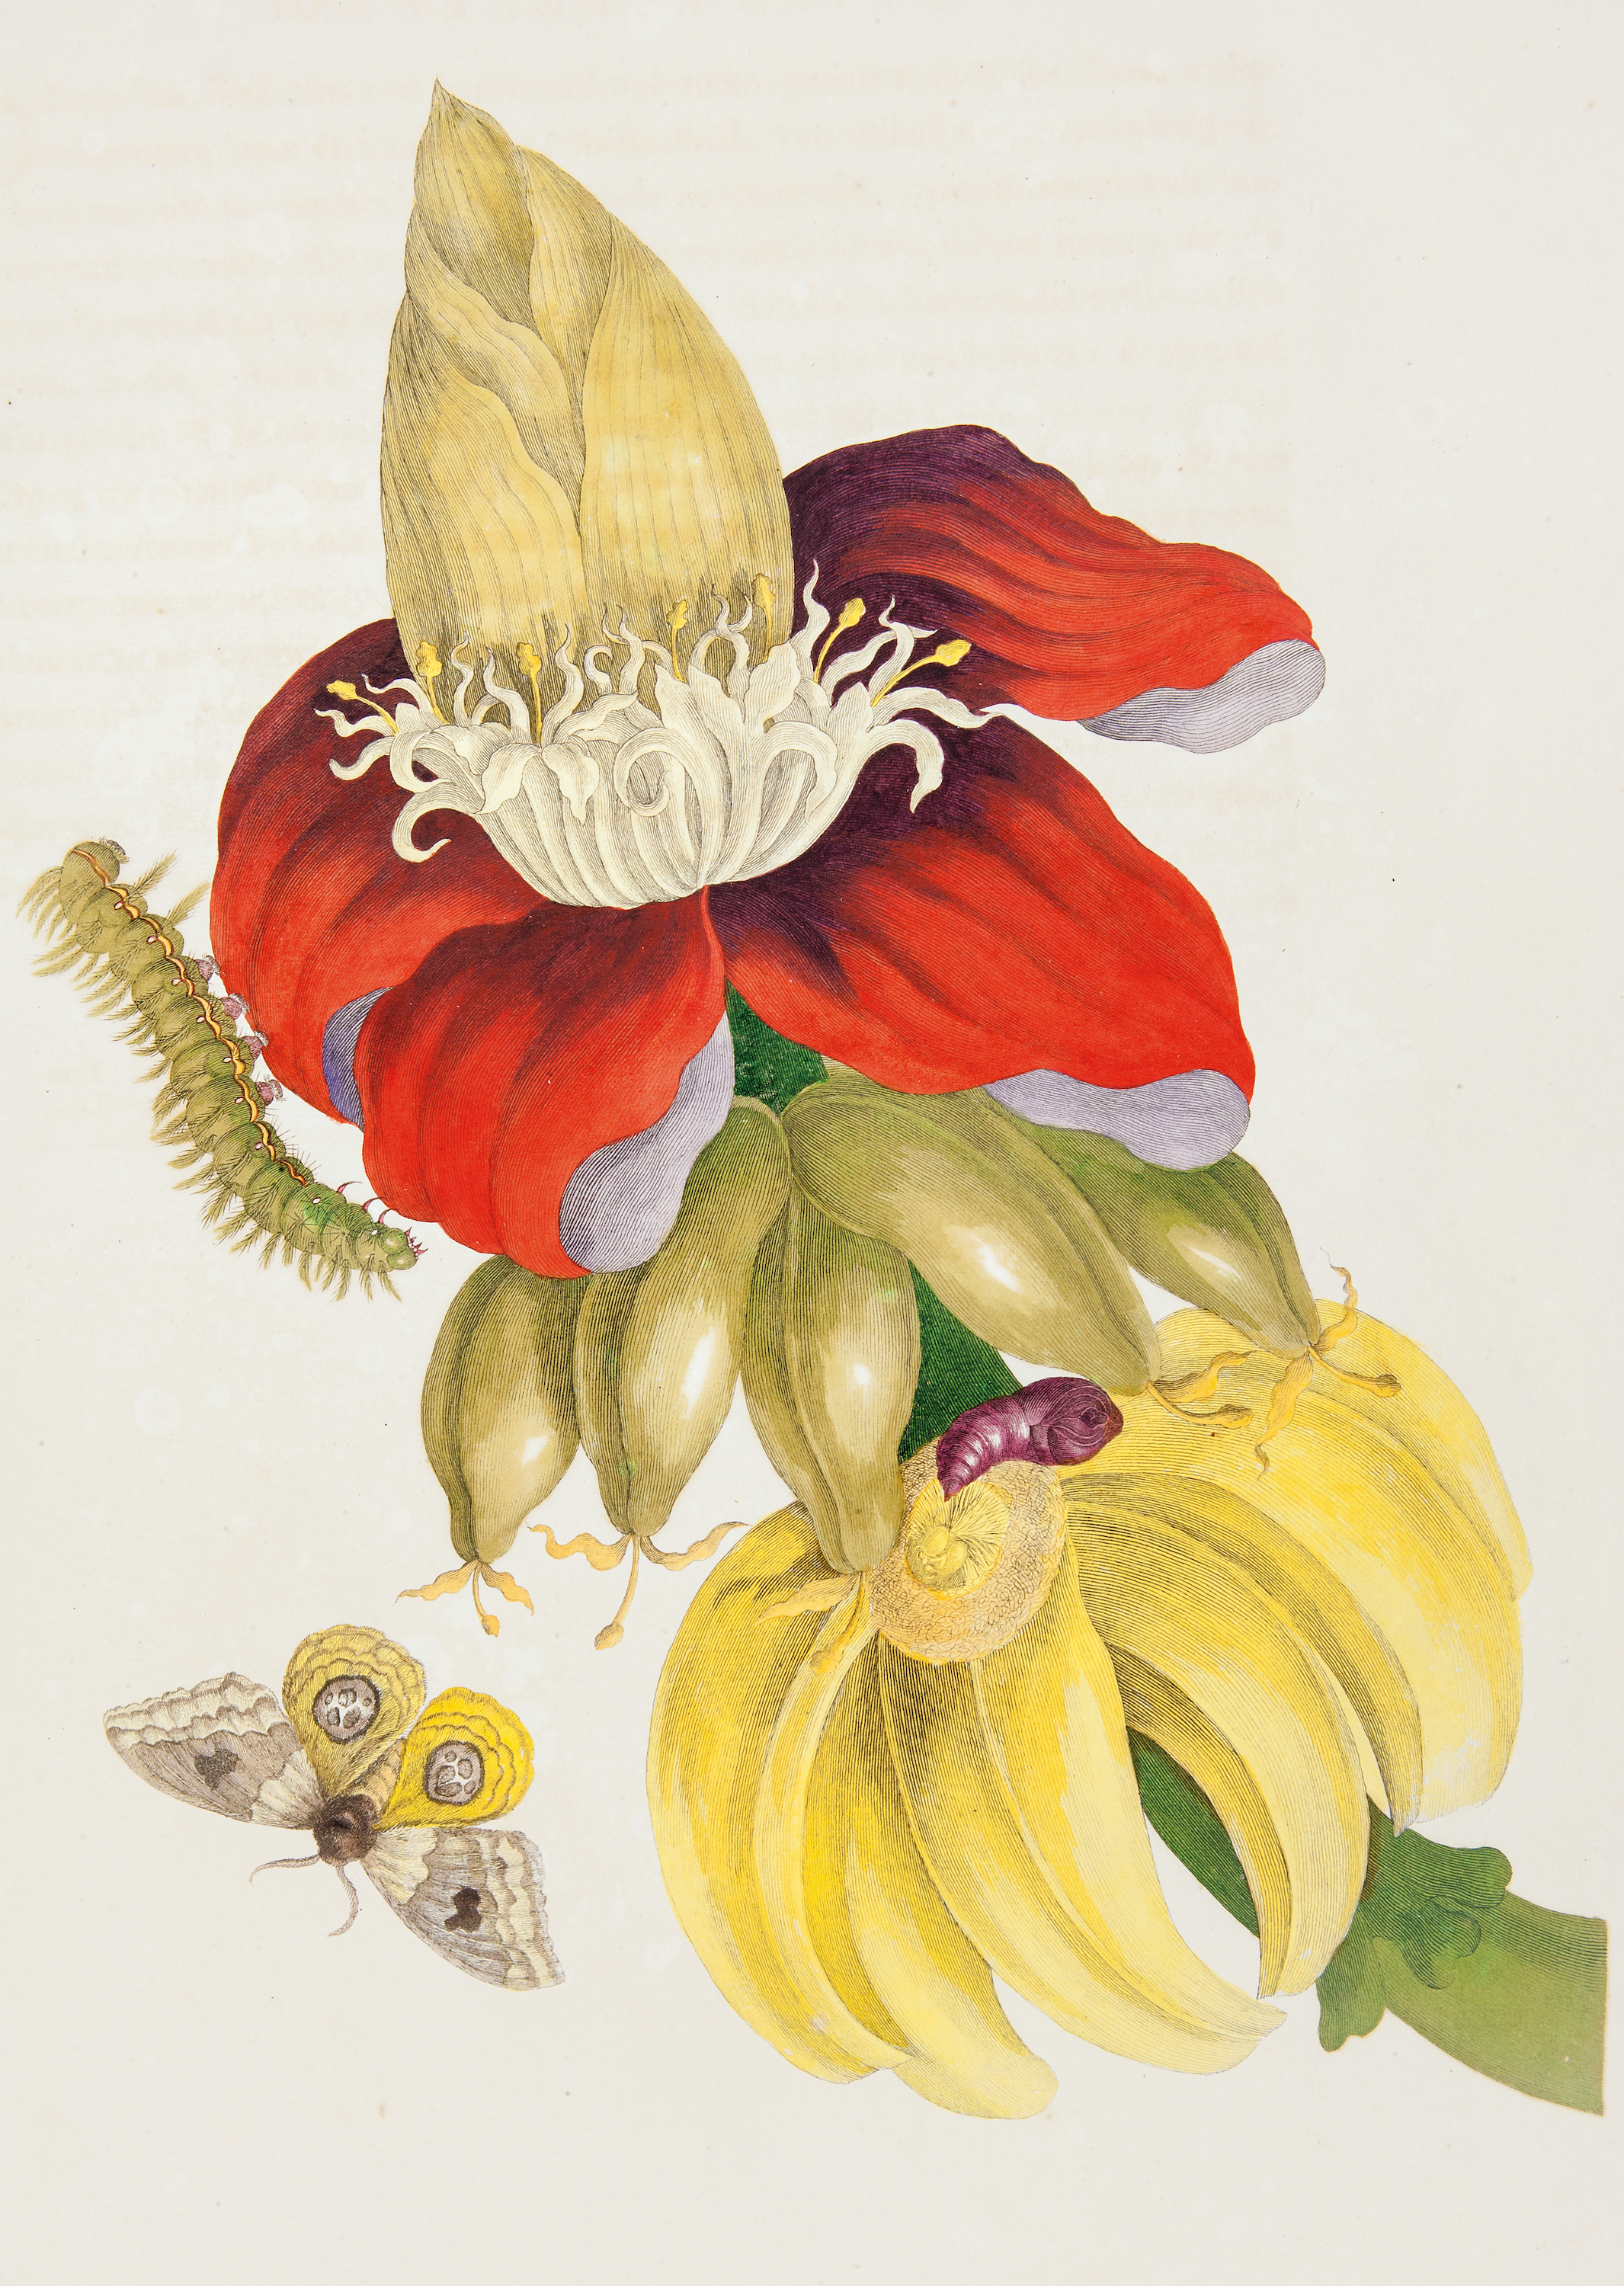 Μπανανόδεντρο και τα στάδια της ζωής μίας νυχτοπεταλούδας by Pieter Sluyter after Maria Sibylla Merian - 1705 